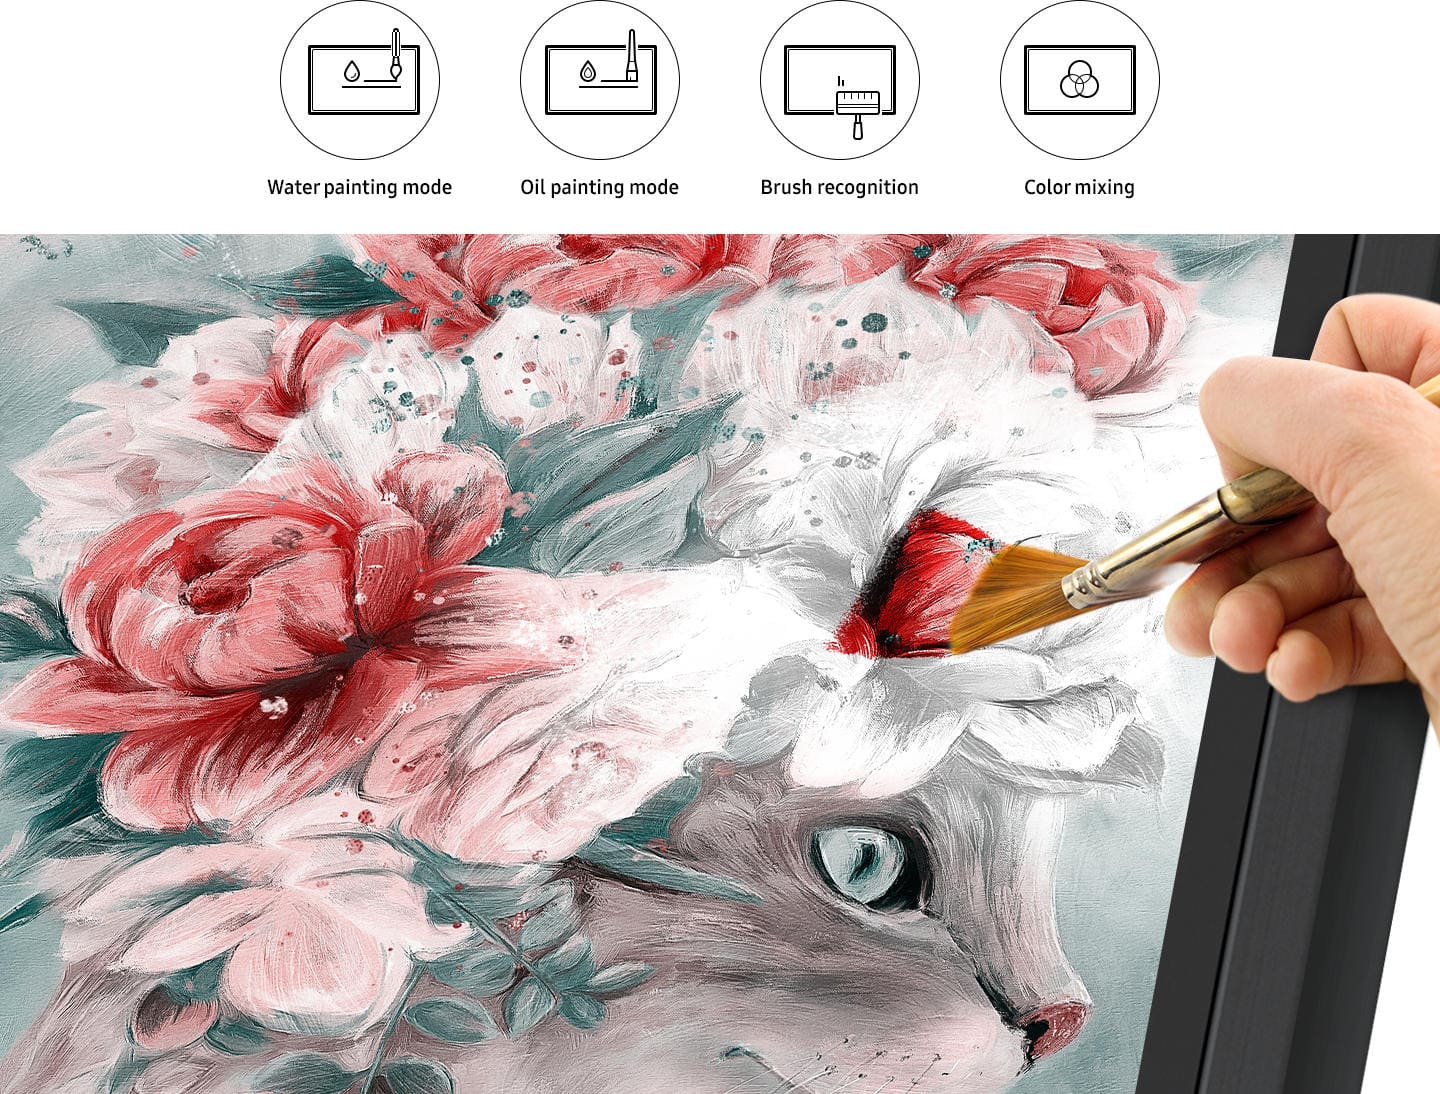 Malen Sie auf dem Samsung Flip WM85R mit echtem Pinsel auf dem Display malen